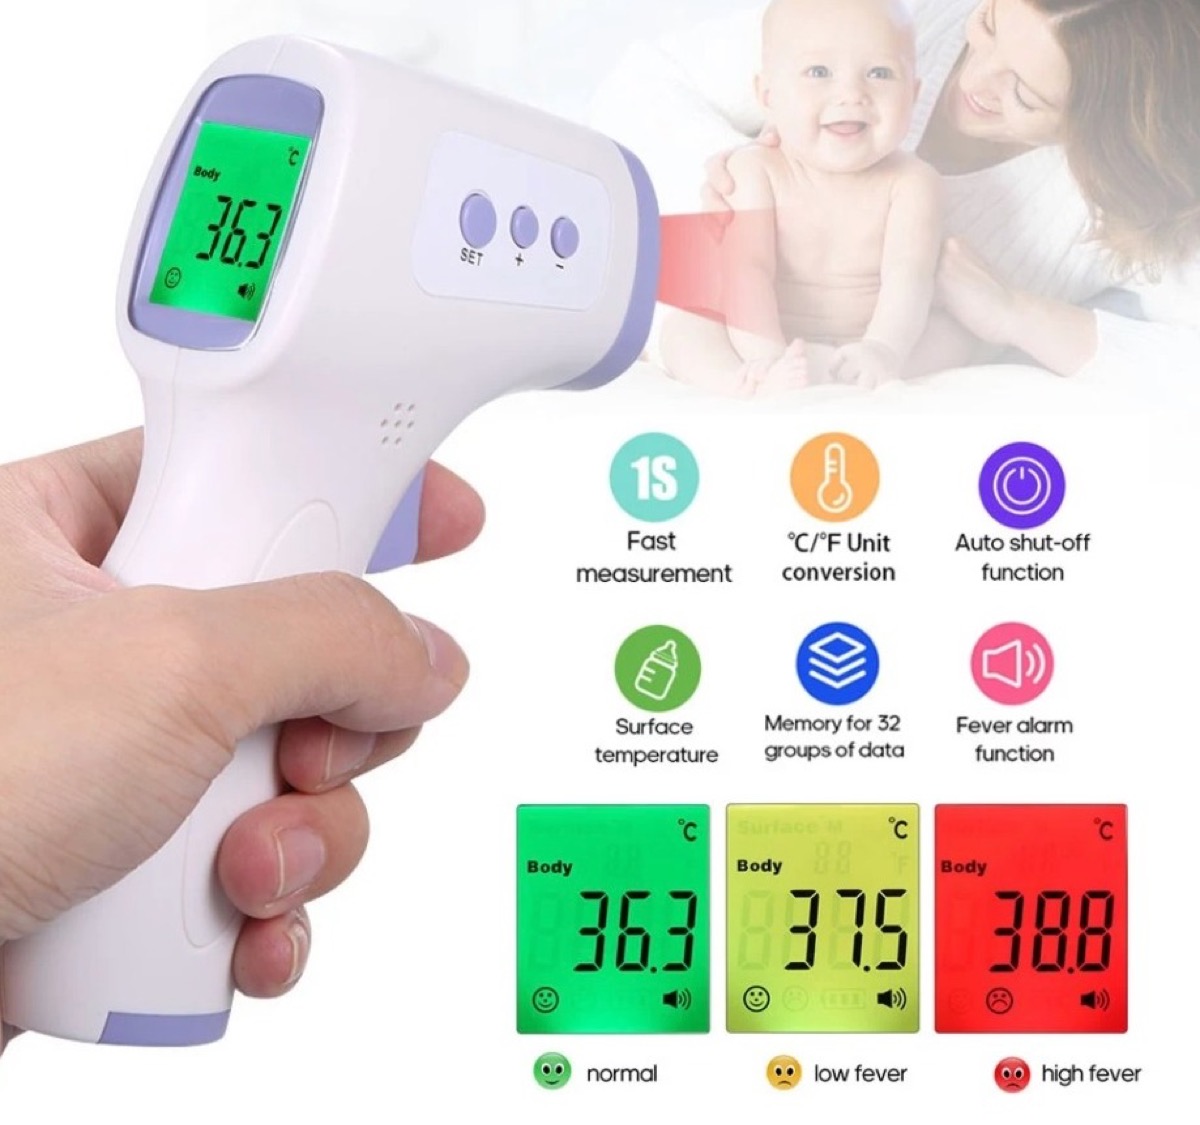 Solo 8 € termometro a infrarossi senza contatto per misurare la febbre